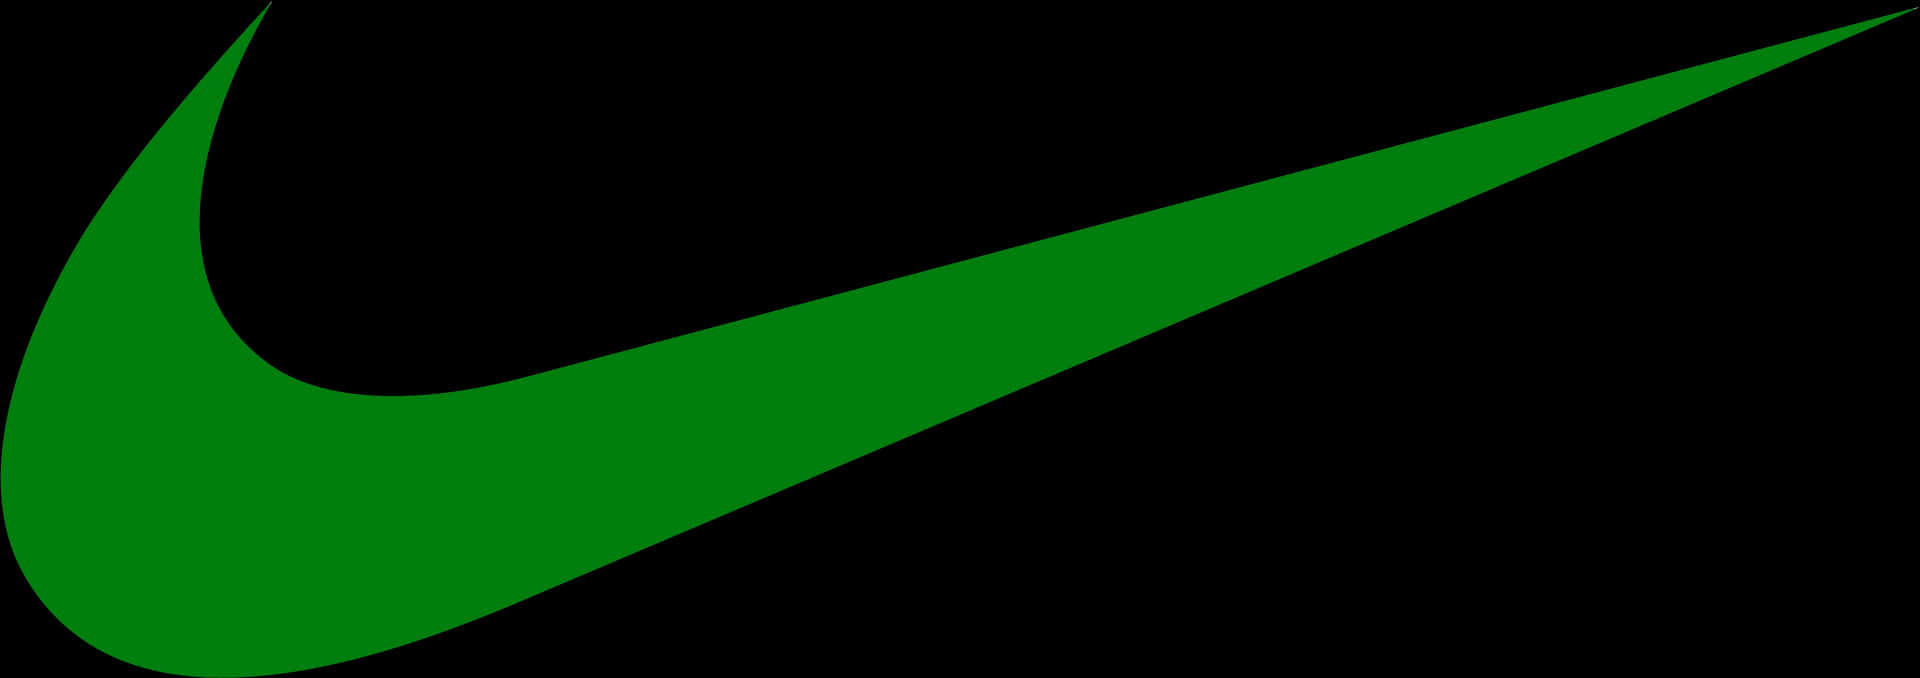 Nike Swoosh Logo Green PNG image